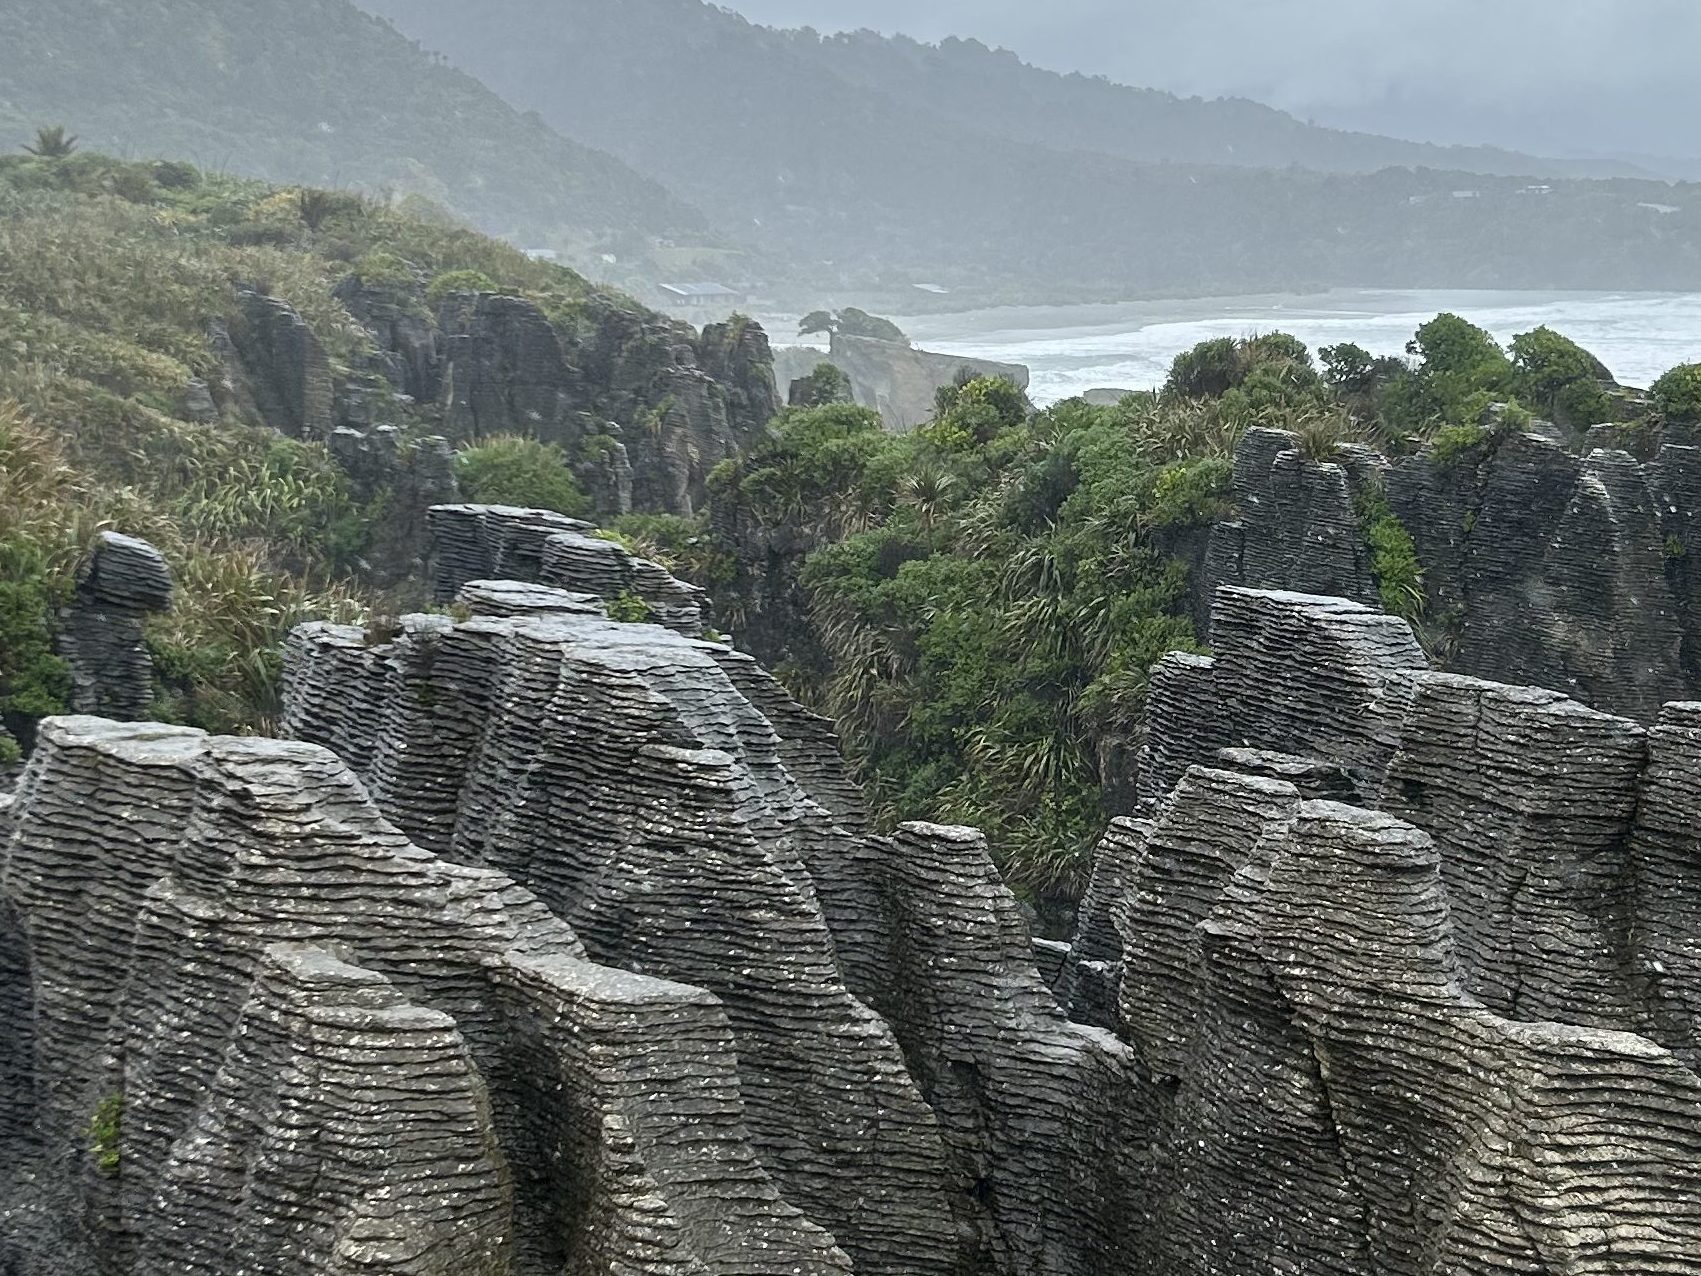 Punakaiki pancake rocks in New Zealand when raining in spring